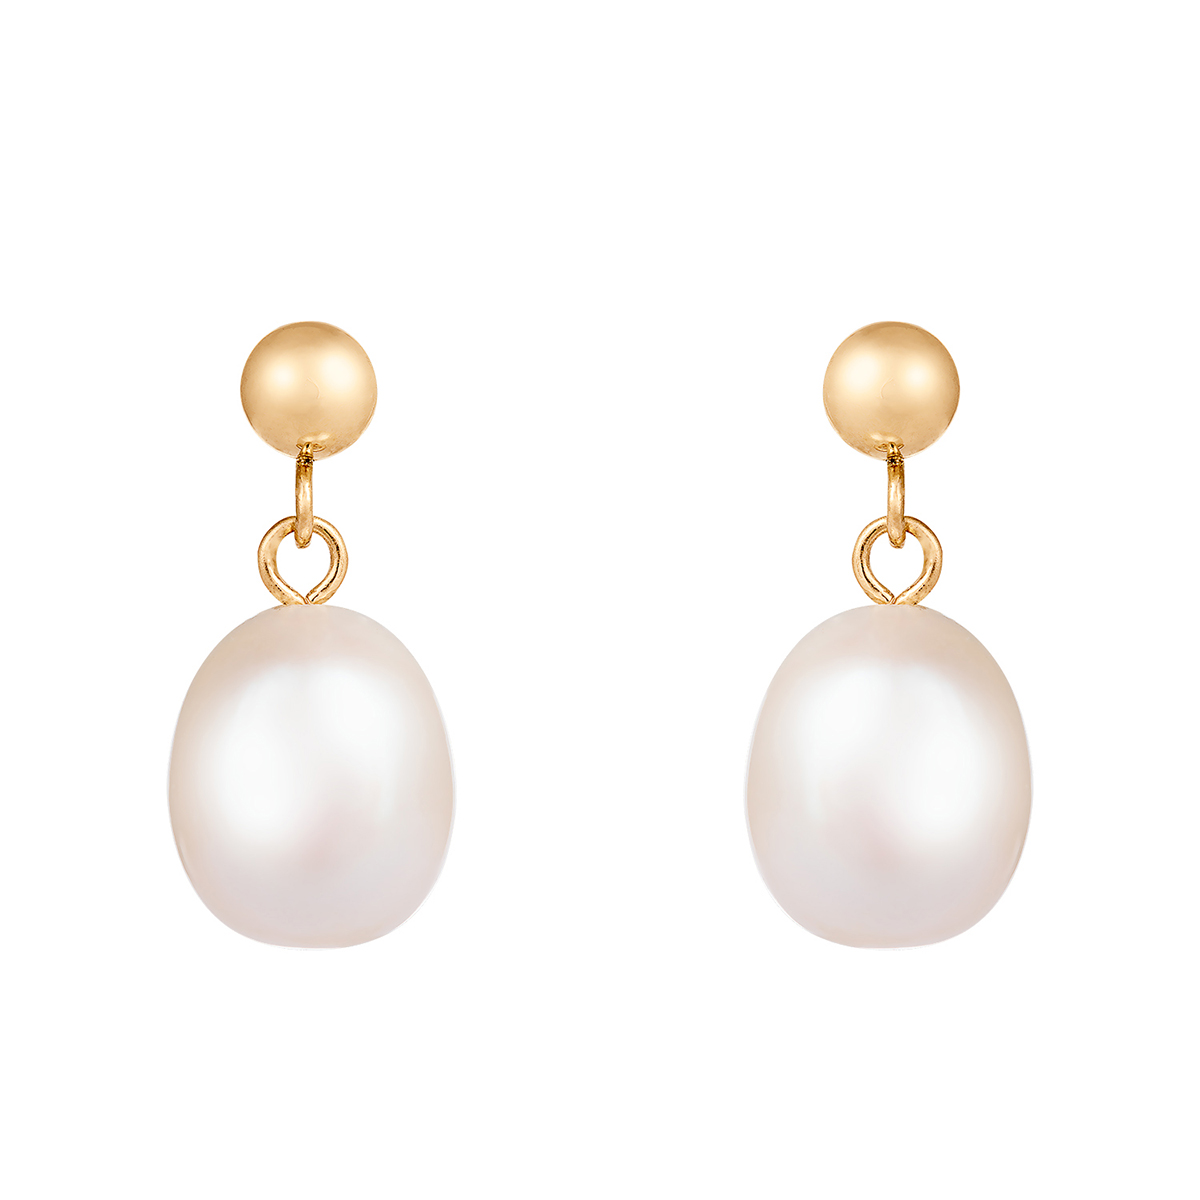 Splendid Pearls 14kt. Gold Dangling Drop-Shaped Pearl Earrings